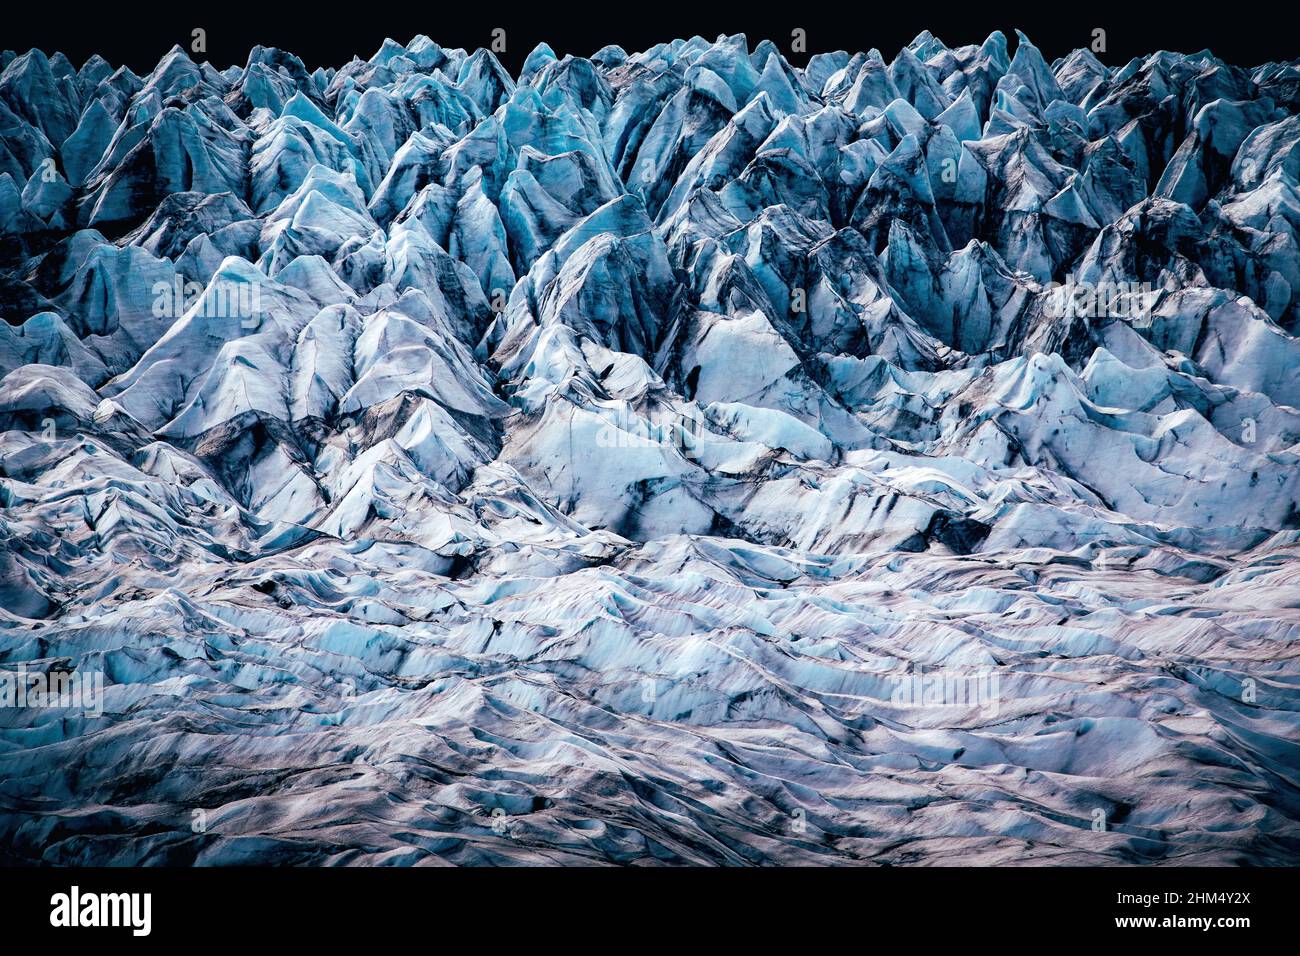 Dômes de glace du glacier de sortie de Fláajökull dans le sud de l'Islande (parc national de Vatnajökull) avec une calotte glaciaire recouverte de cendres volcaniques noires Banque D'Images